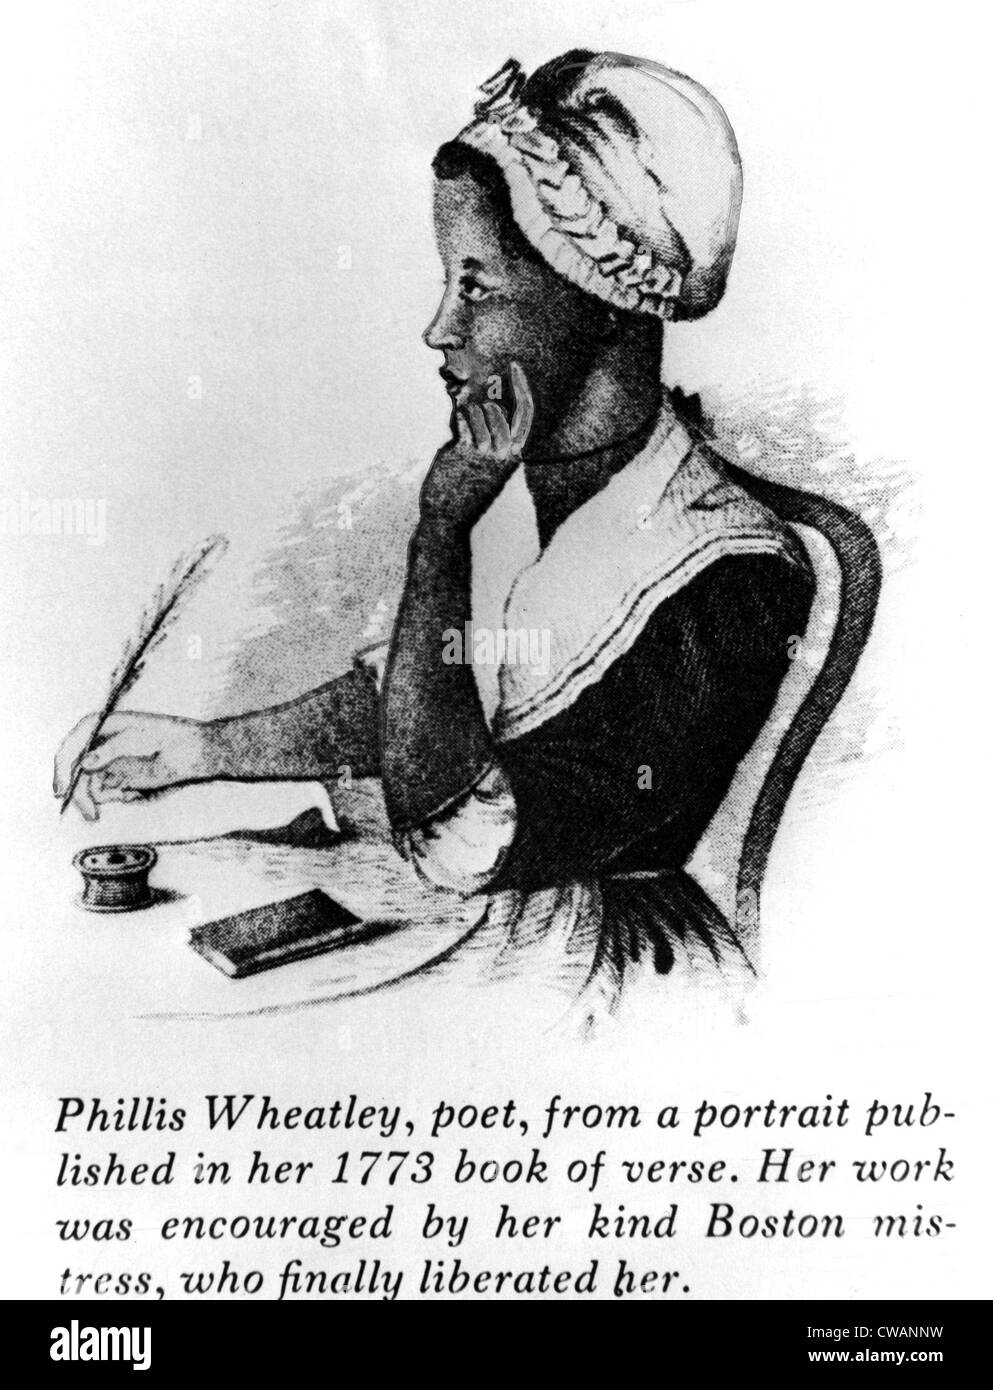 Phillis Wheatley (1753-1784), ein Sklave, der der erste Afroamerikaner, veröffentlicht wurde. Zeichnung über 1773 datiert... Stockfoto